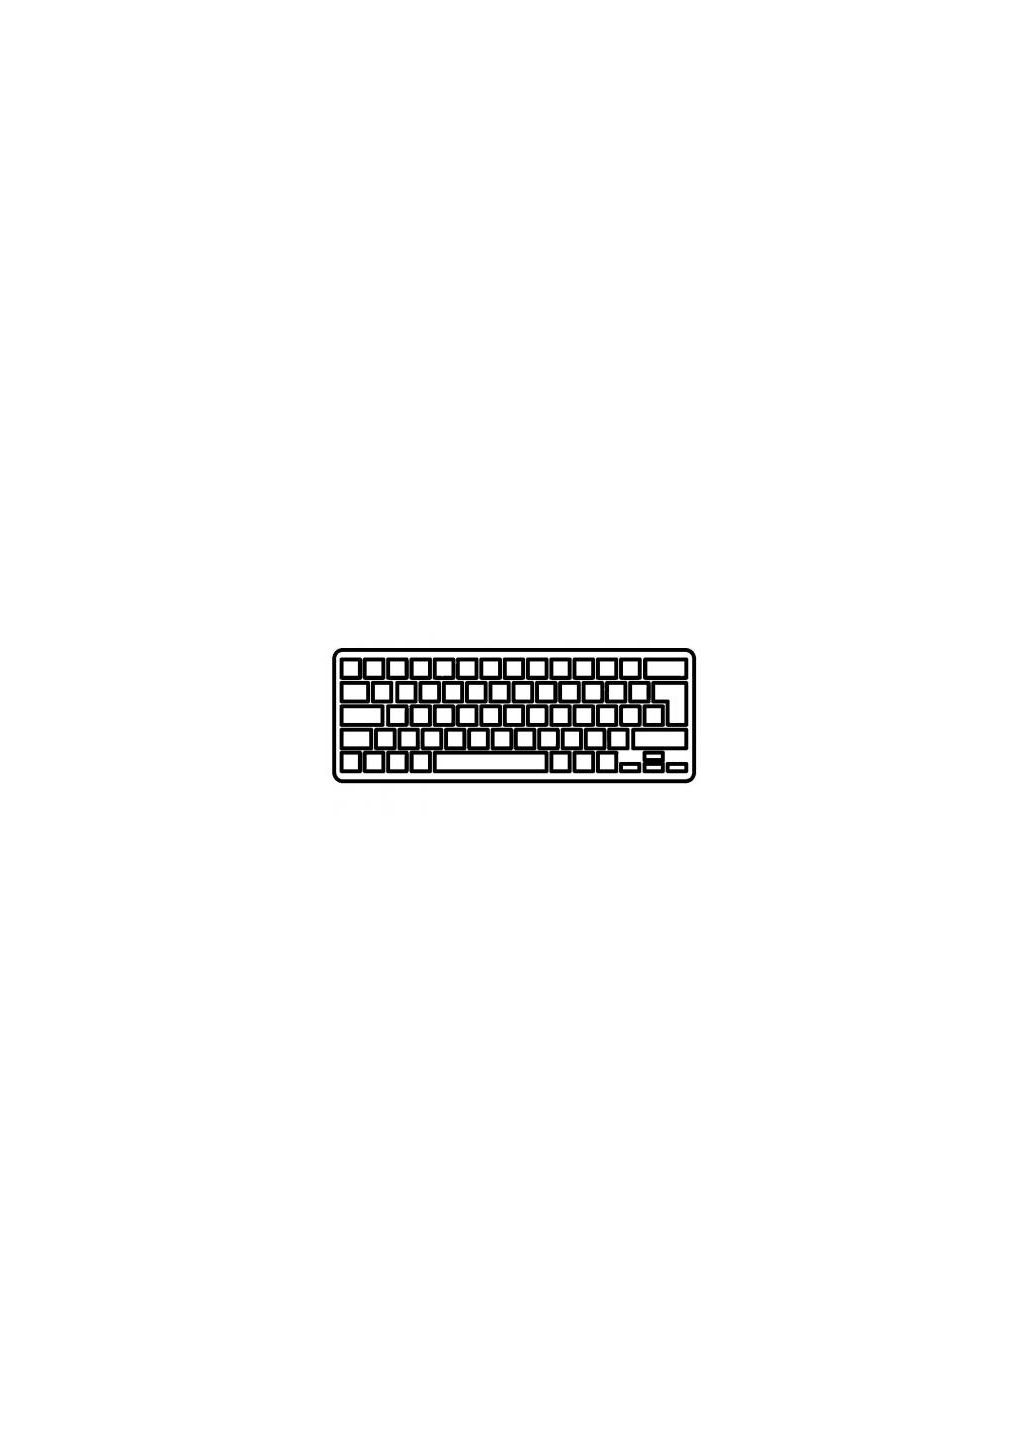 Клавиатура ноутбука Aspire V5471/V5-431 Series черная с подсветкой/без рамки RU (A43556) Acer aspire v5-471/v5-431 series черная с подсветкой/бе (276706576)